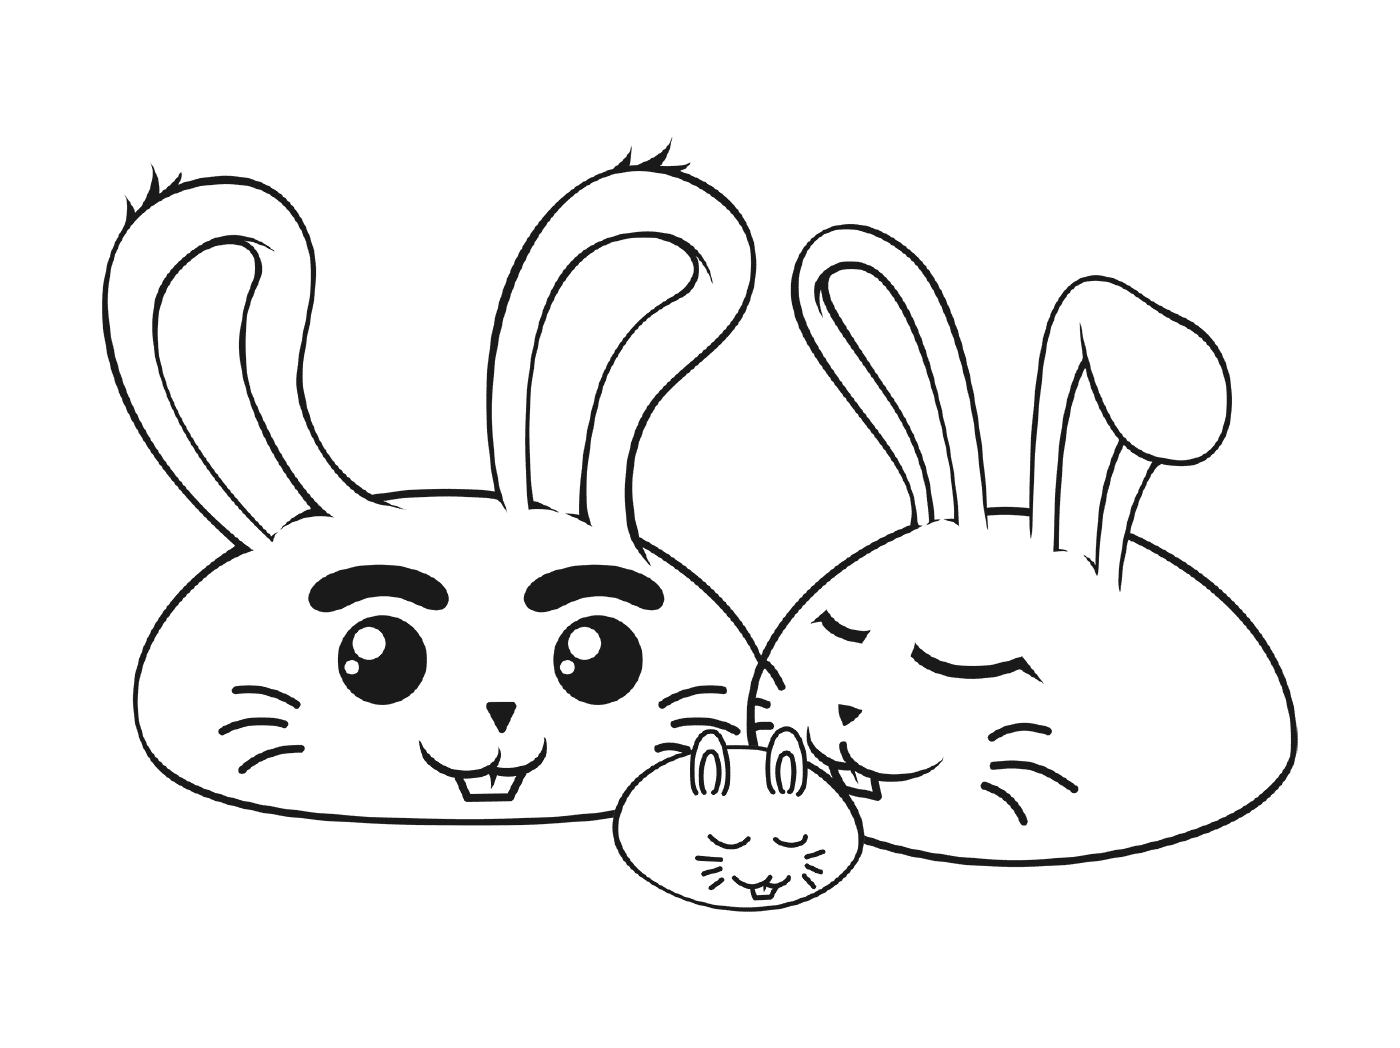  Семья кроликов 